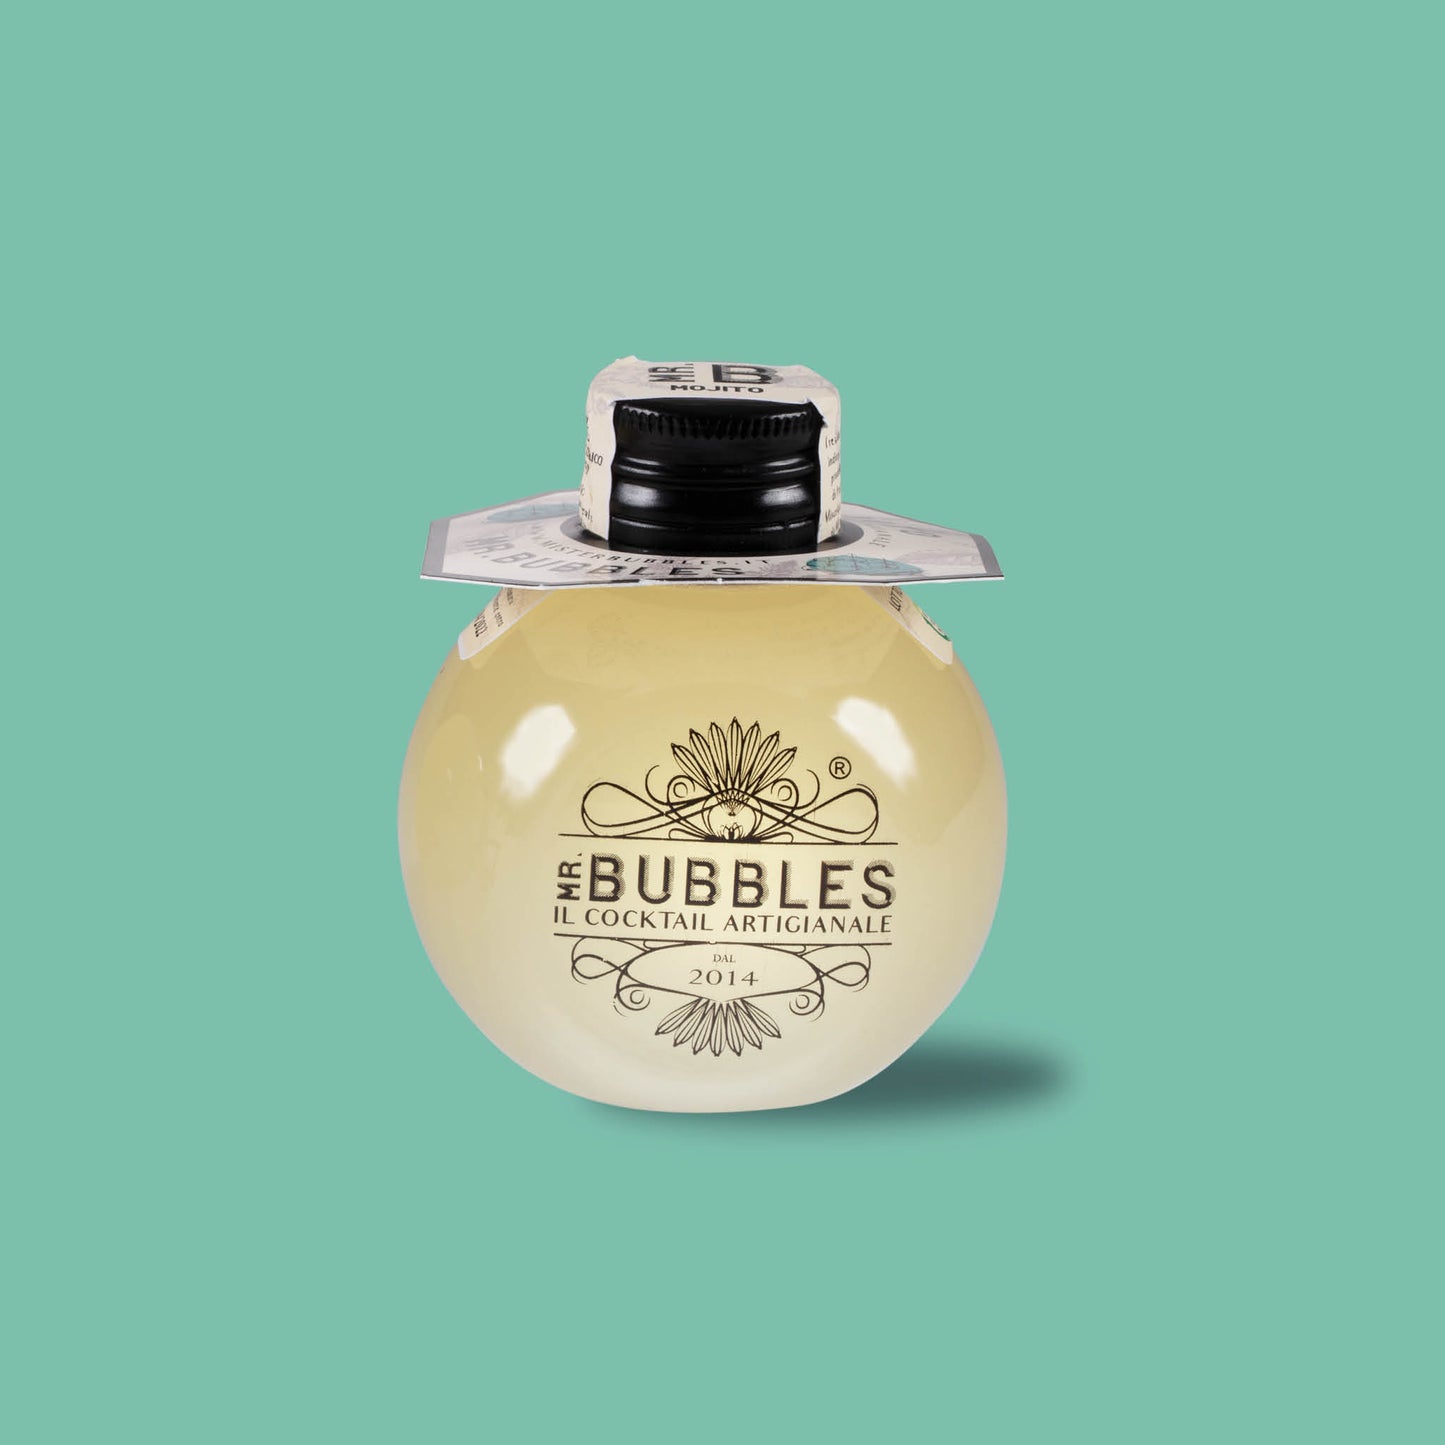 La bolla Mr Bubbles è perfettamente riciclabile.